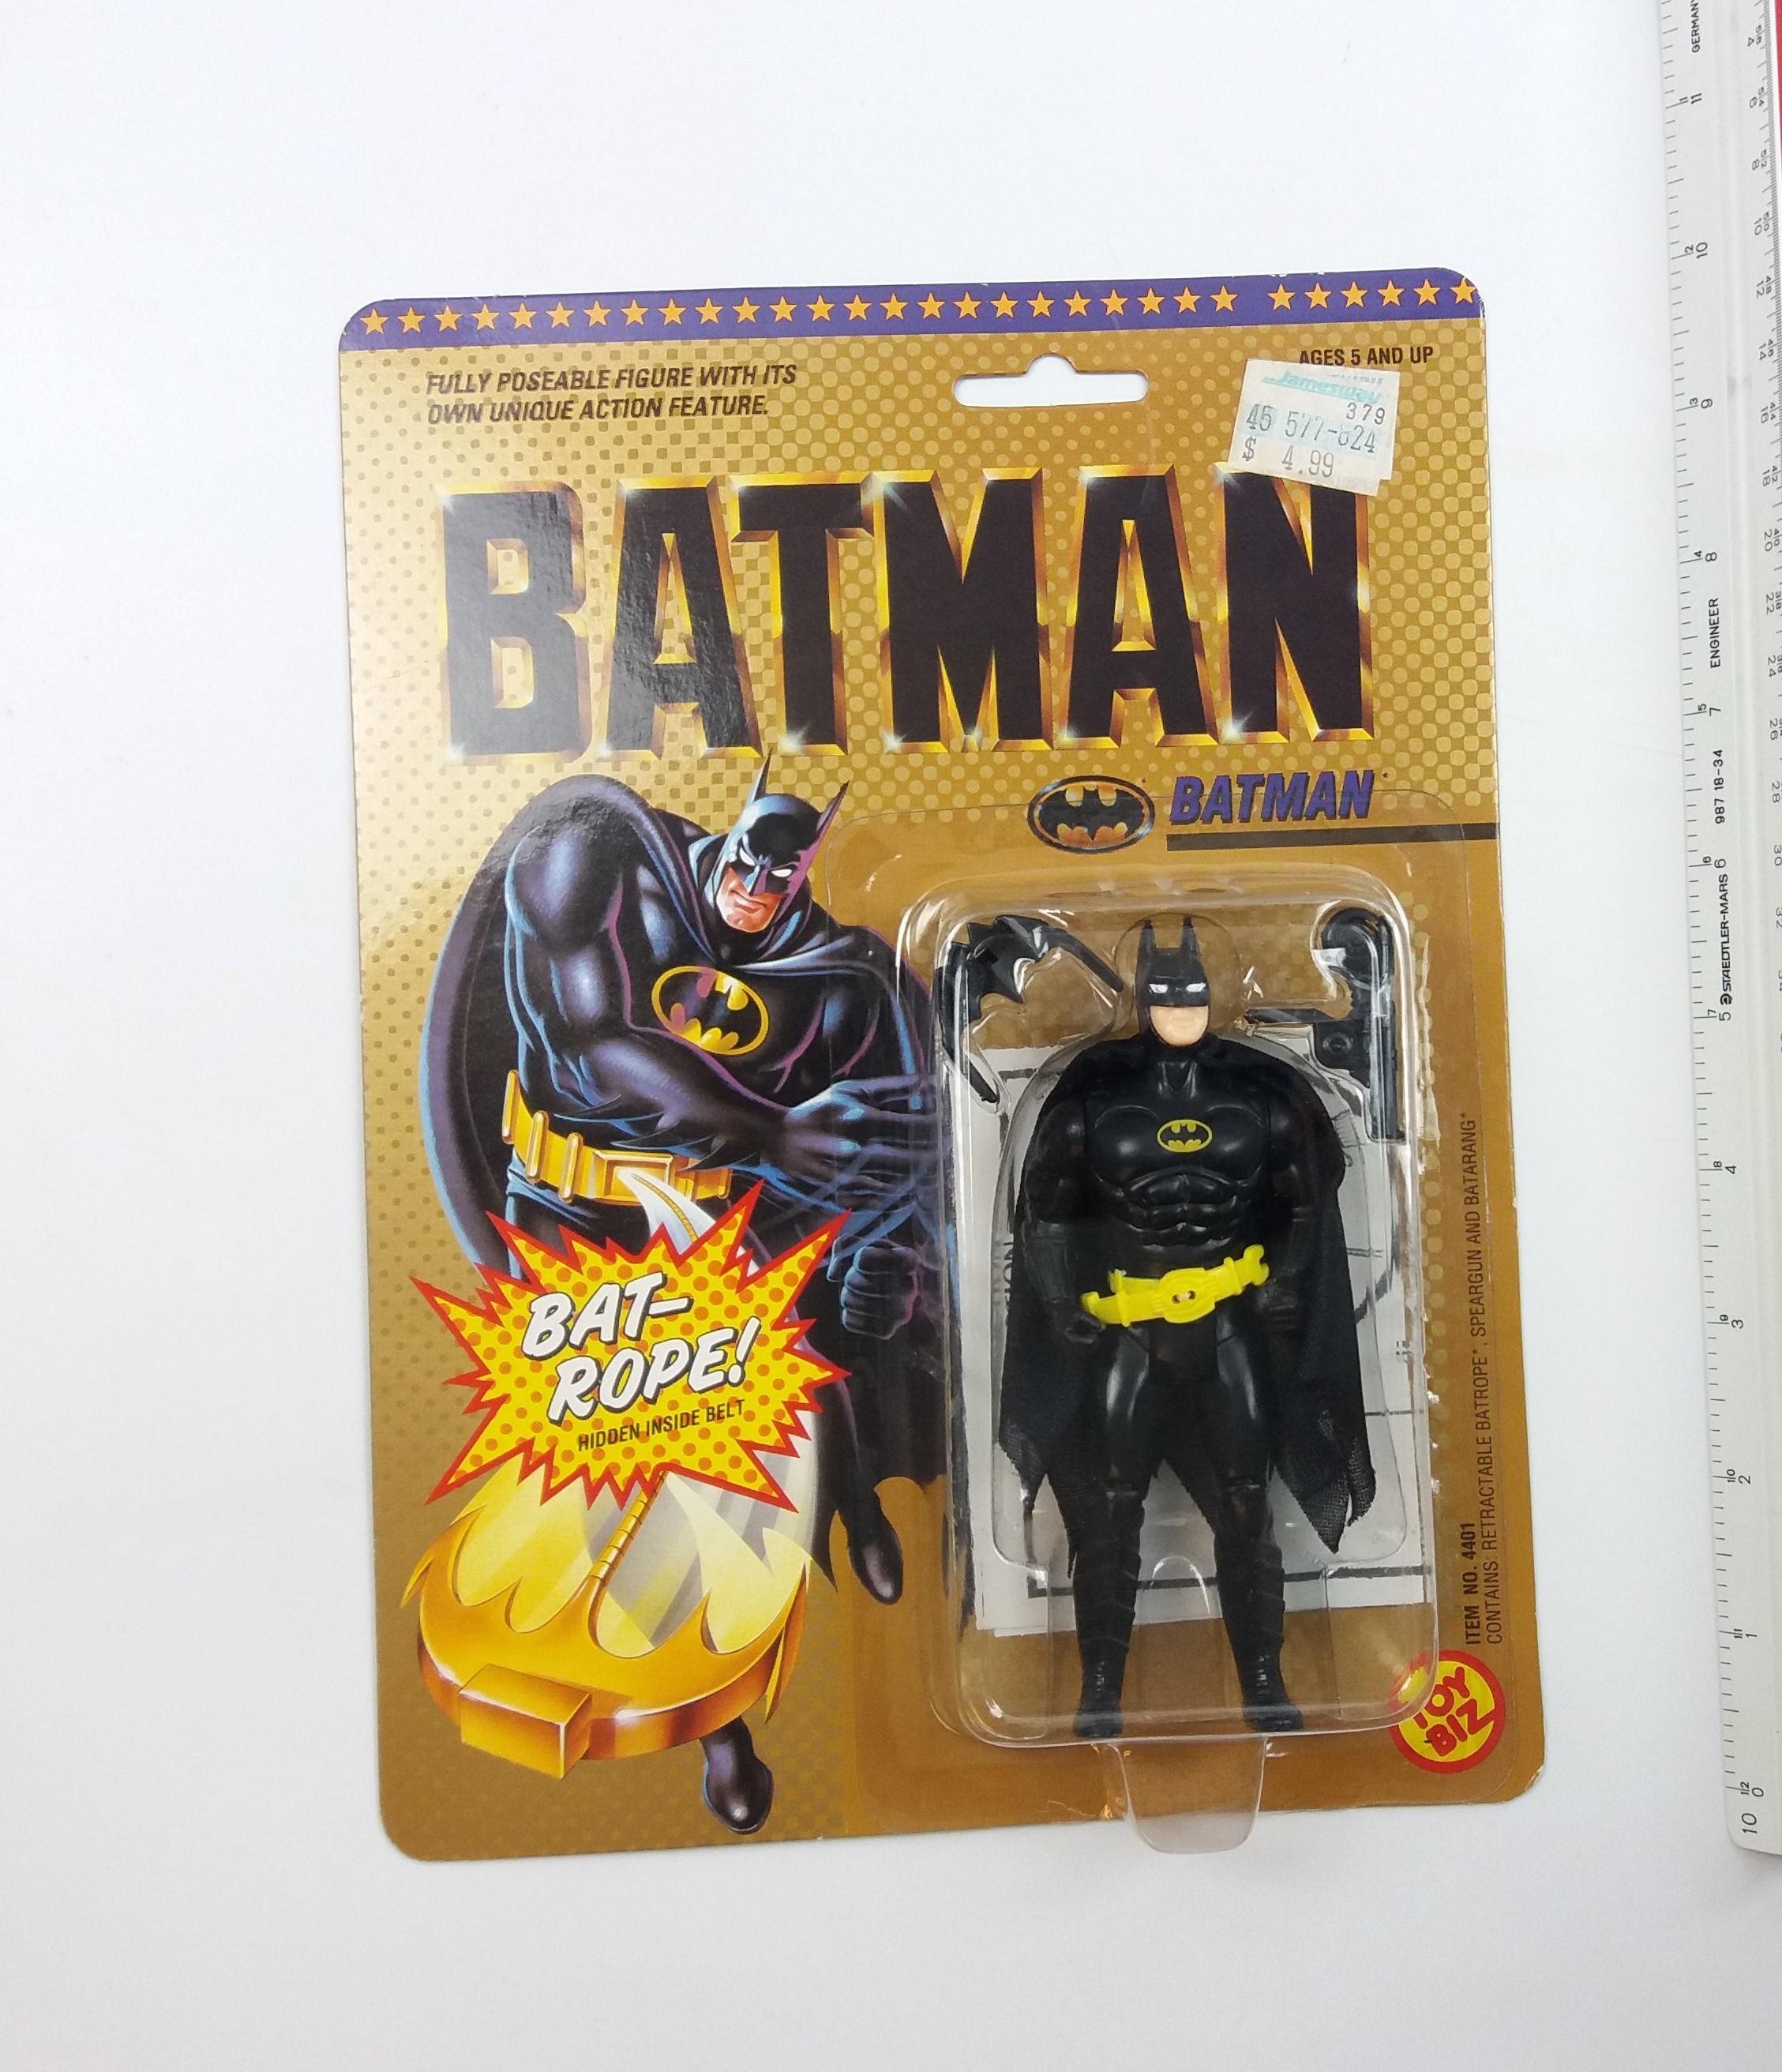 Batman: The Movie 1989 Vintage Action Figure